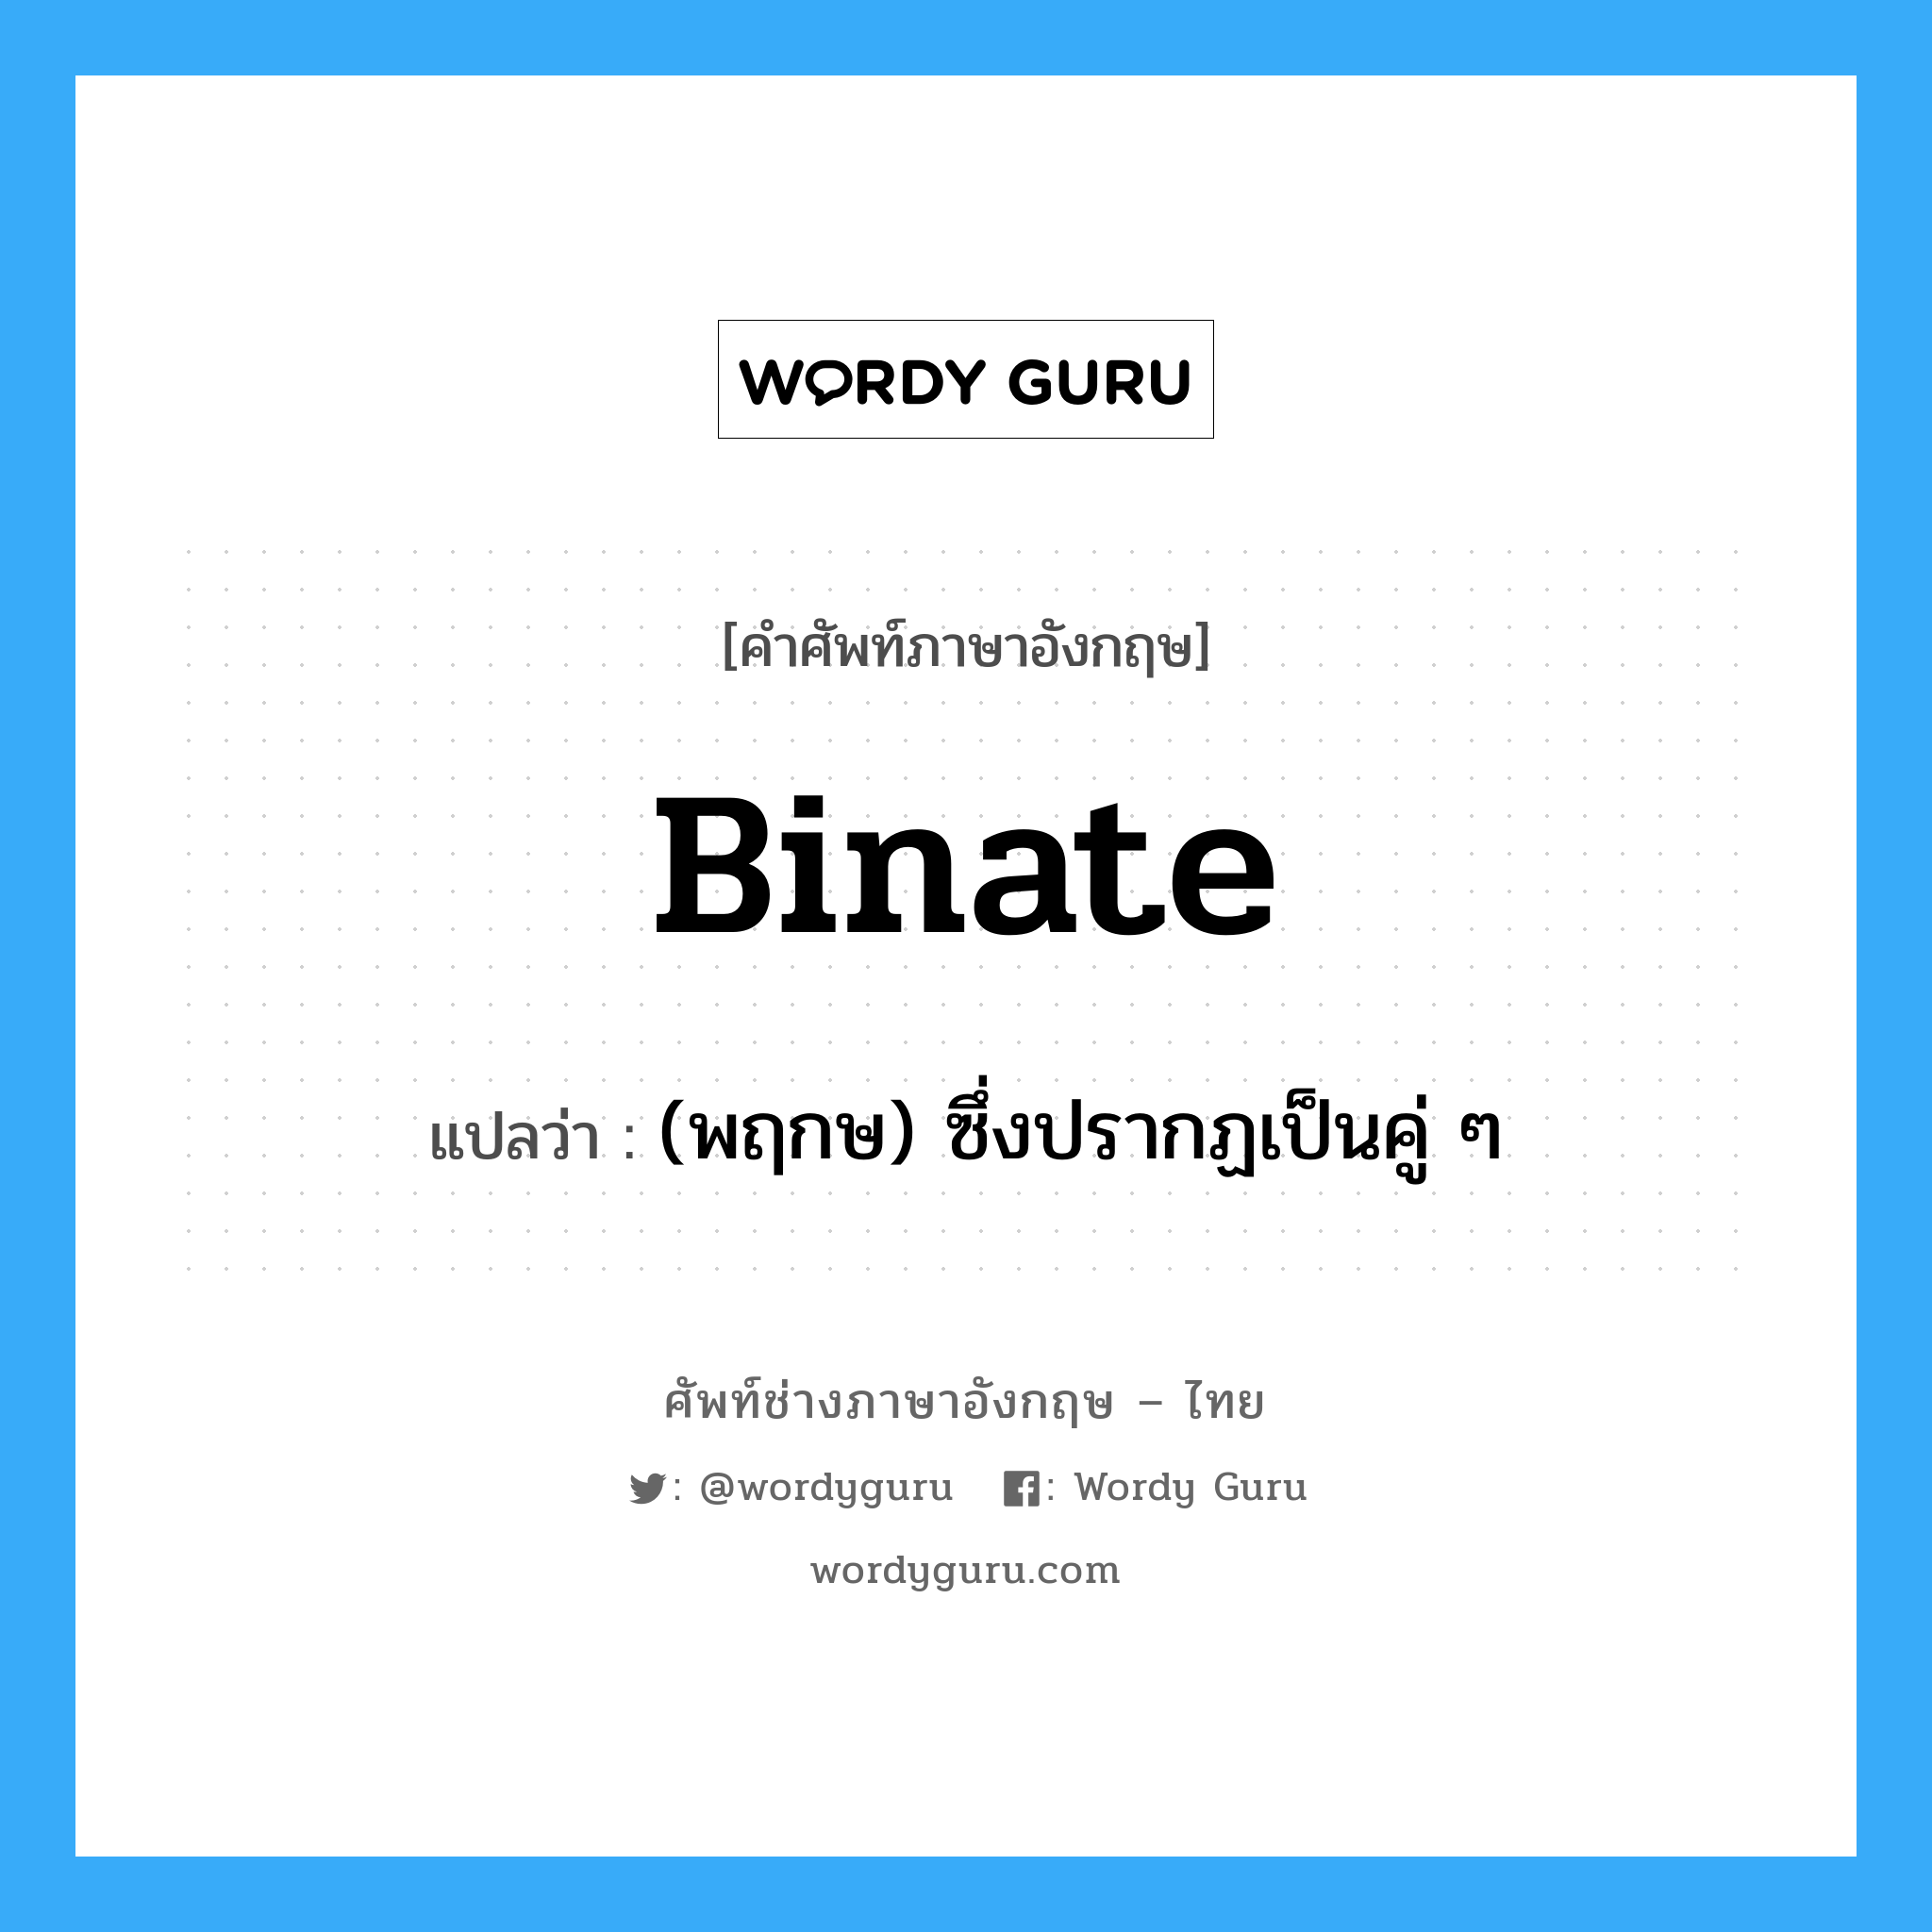 (พฤกษ) ซึ่งปรากฏเป็นคู่ ๆ ภาษาอังกฤษ?, คำศัพท์ช่างภาษาอังกฤษ - ไทย (พฤกษ) ซึ่งปรากฏเป็นคู่ ๆ คำศัพท์ภาษาอังกฤษ (พฤกษ) ซึ่งปรากฏเป็นคู่ ๆ แปลว่า binate